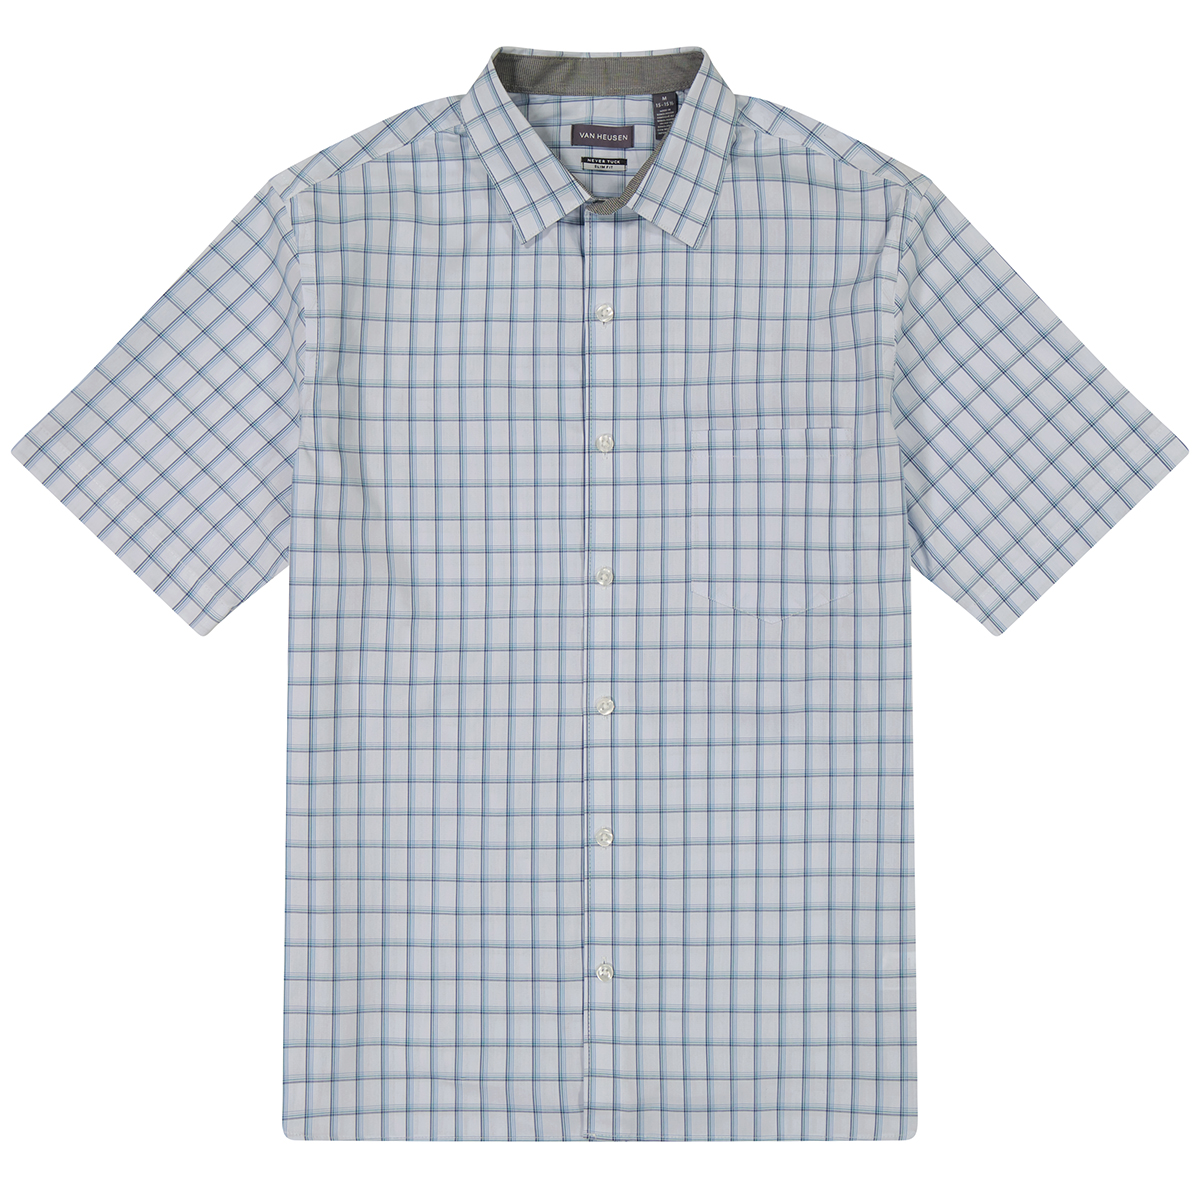 Van Heusen Men's Essential Woven Short-Sleeve Shirt, Blue